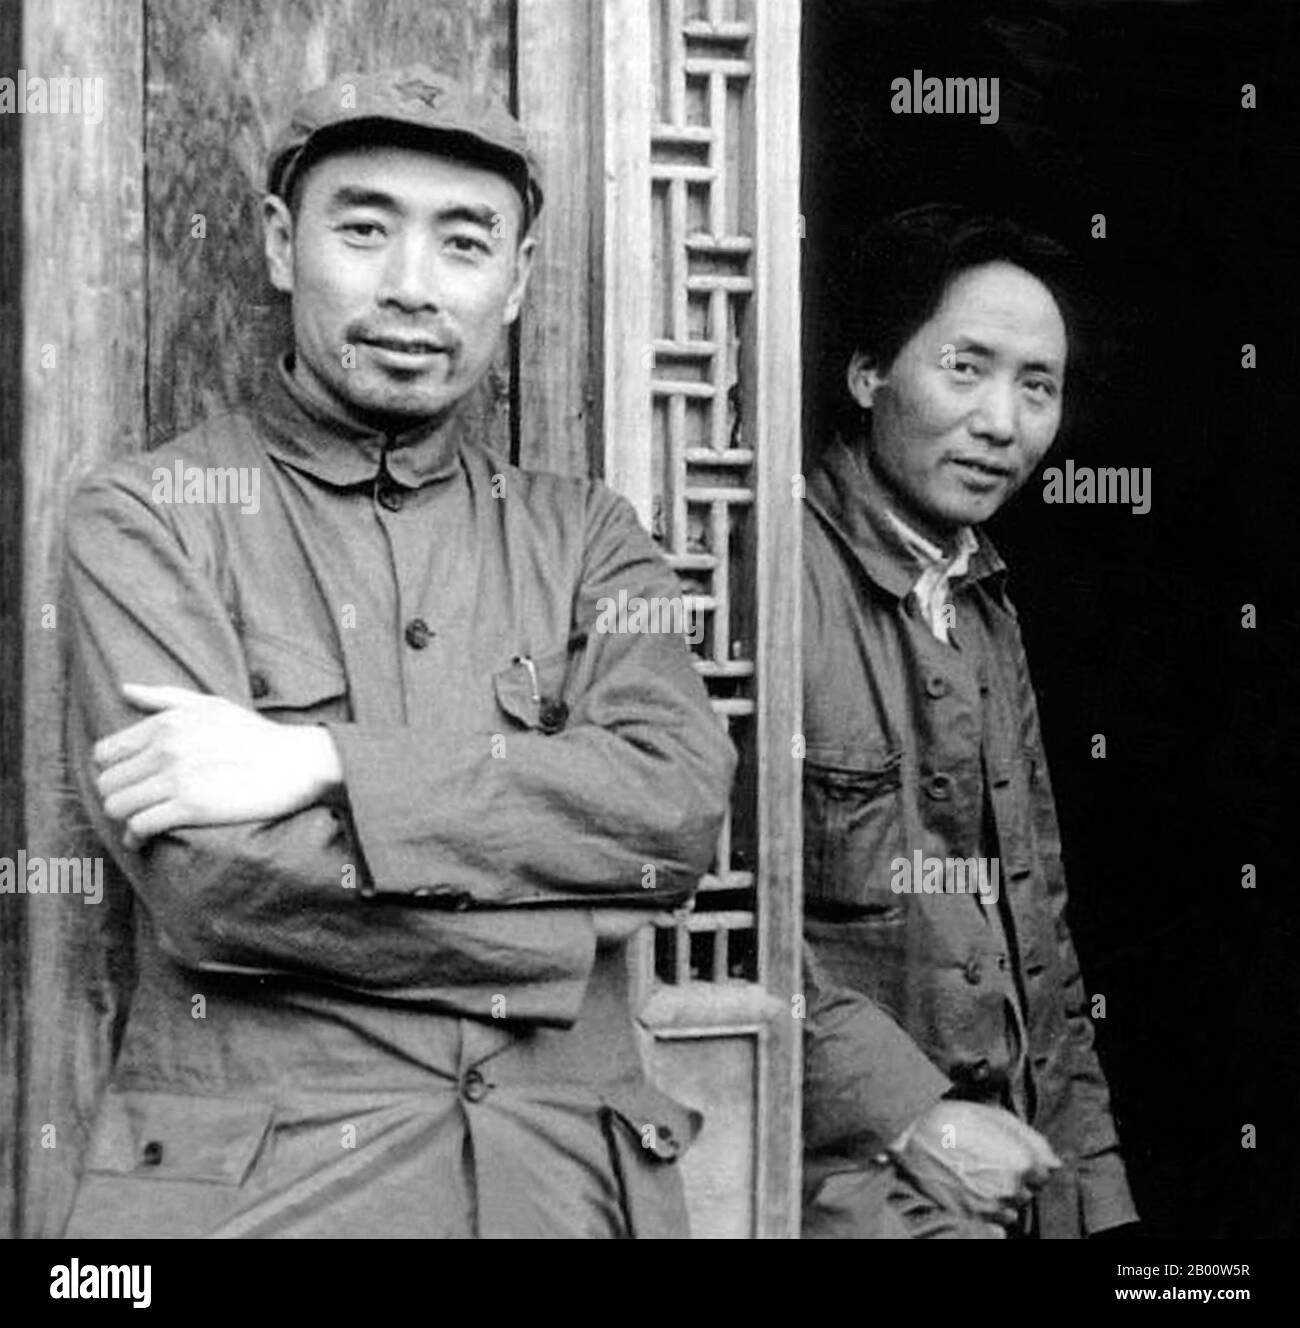 China: Lockere Zhou Enlai (links) und Mao Zedong in der chinesischen kommunistischen Hauptstadt Yan'an, c. 1936. Foto des US-Journalisten Edgar Snow. Mao Zedong, auch als Mao Tse-tung (26. Dezember 1893 – 9. September 1976) transliteriert, war ein chinesischer kommunistischer Revolutionär, Guerilla-Kriegsstratege, Autor, politischer Theoretiker und Führer der chinesischen Revolution. Allgemein als Vorsitzender Mao bezeichnet, war er der Architekt der Volksrepublik China (PRC) seit ihrer Gründung im Jahr 1949 und hielt bis zu seinem Tod im Jahr 1976 die autoritäre Kontrolle über die Nation. Stockfoto